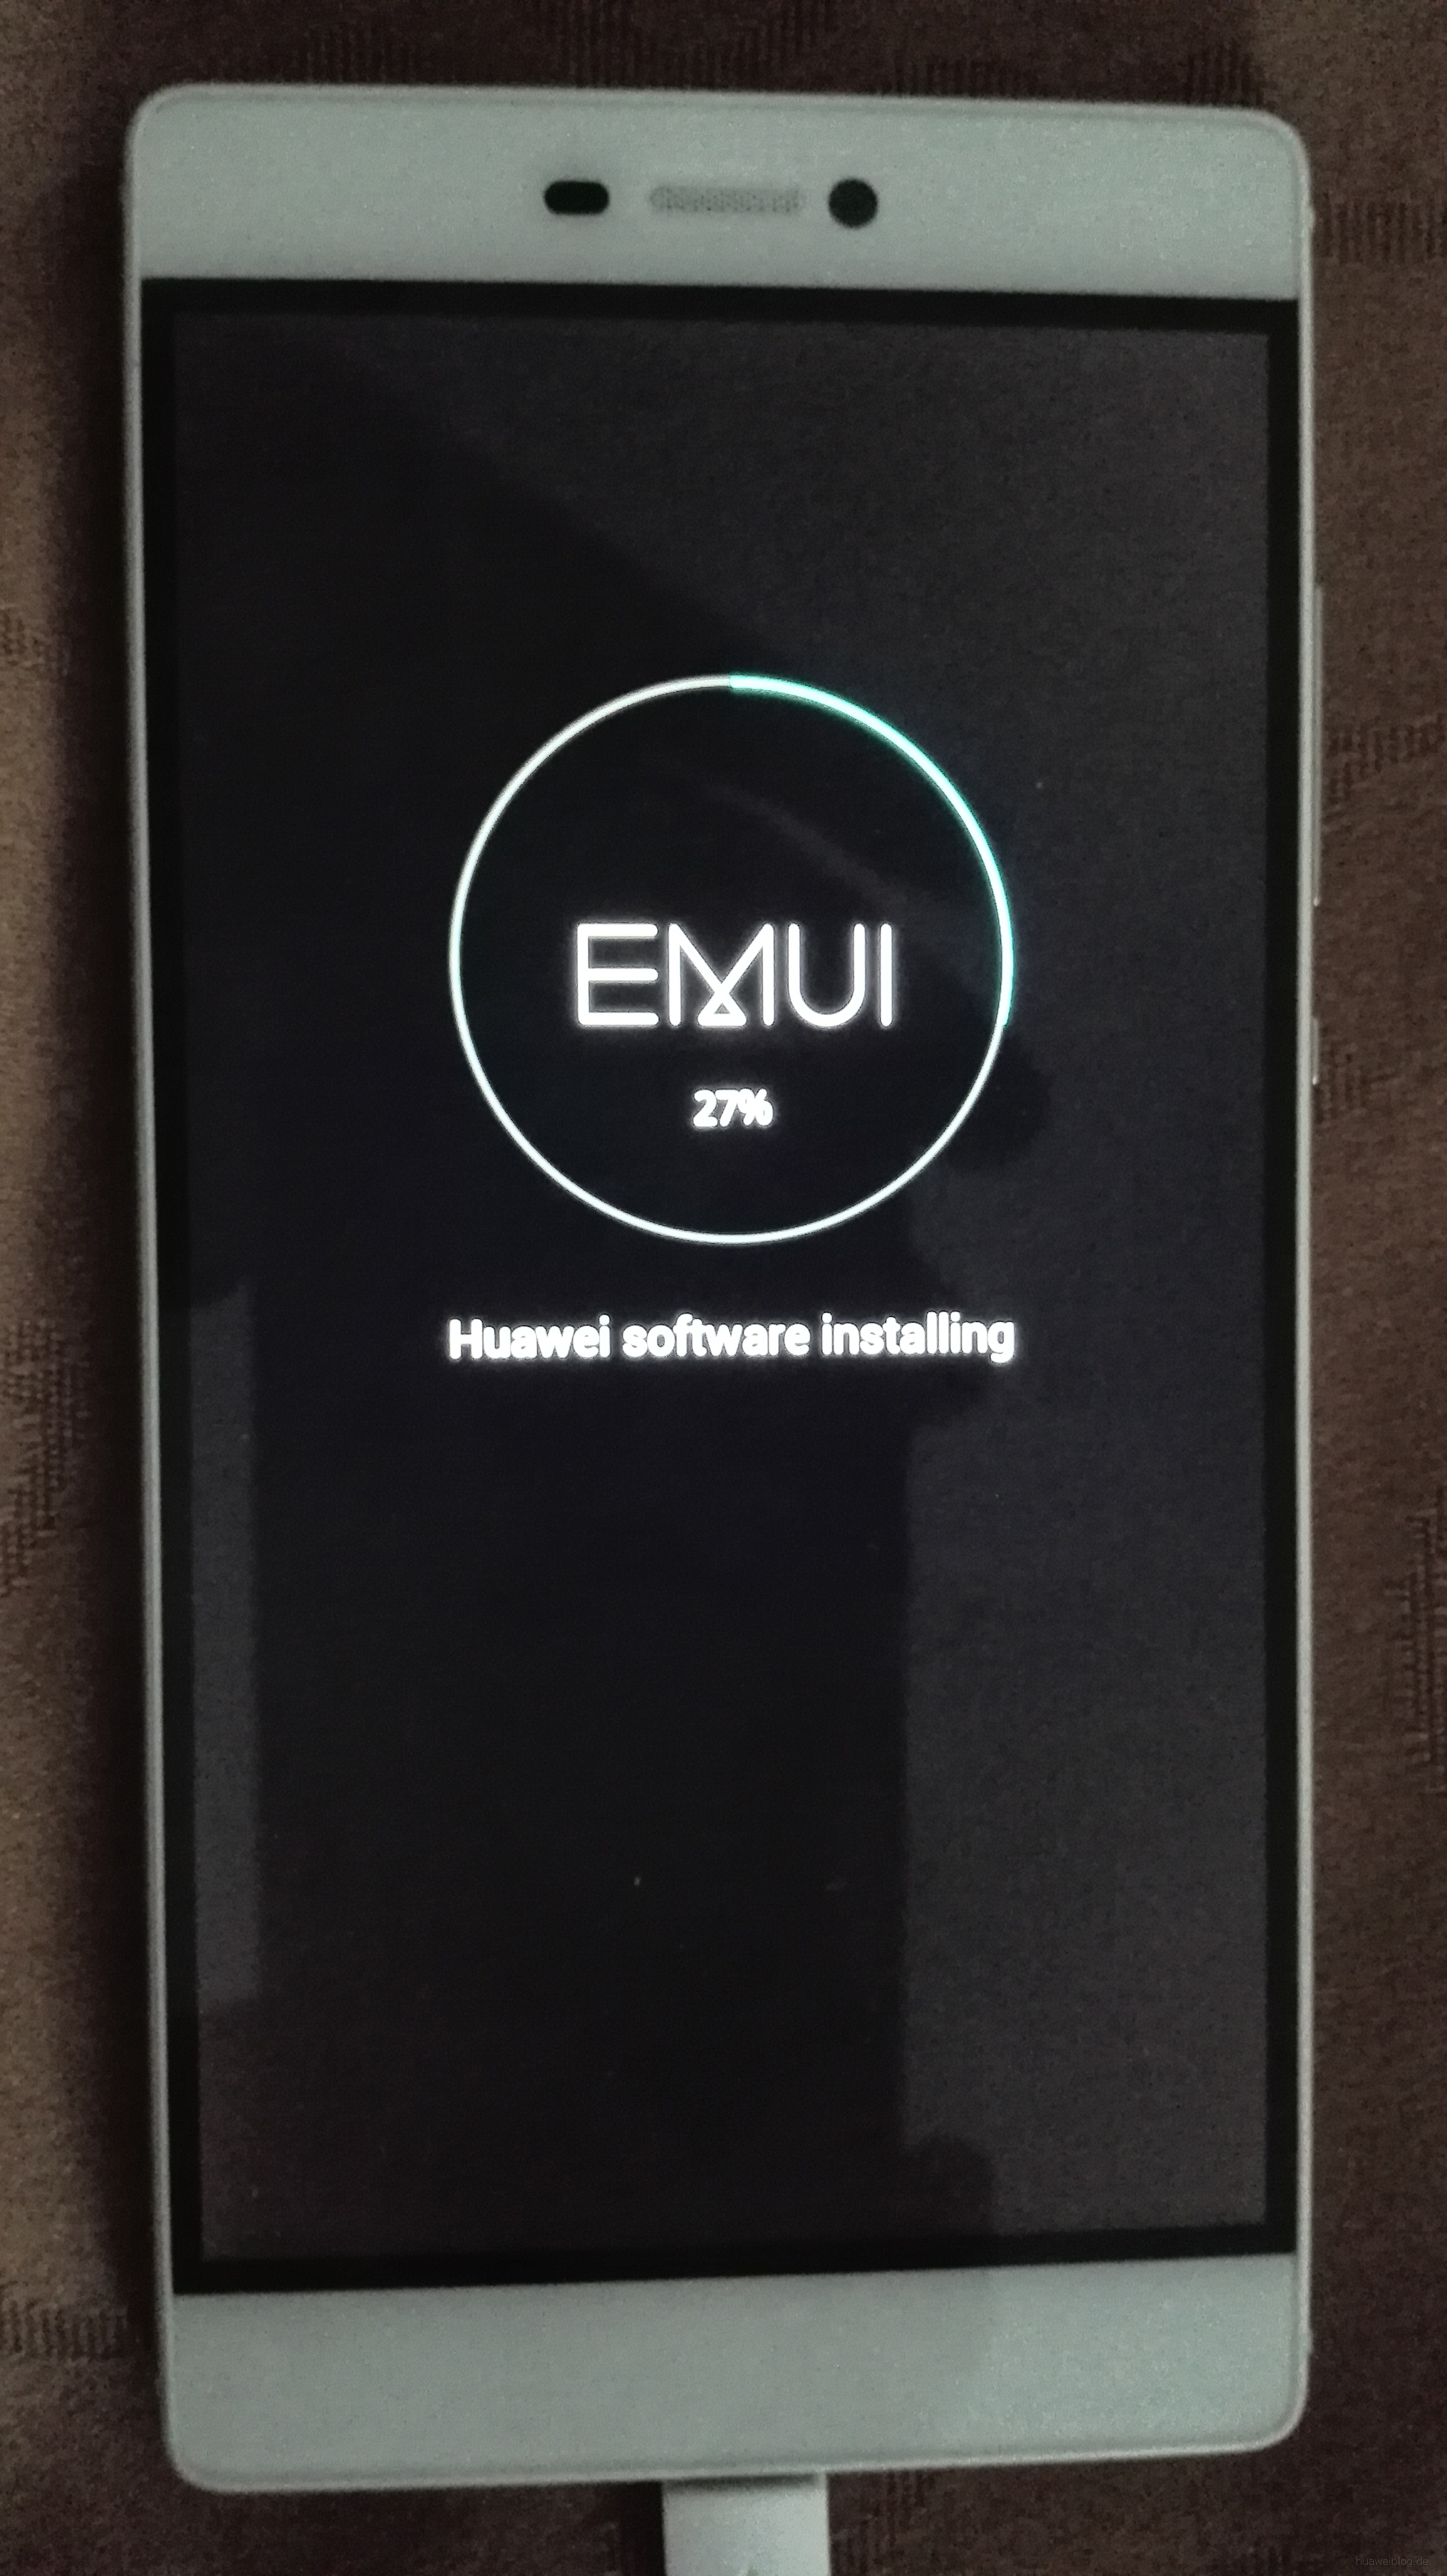 Huawei P8 Firmware Update